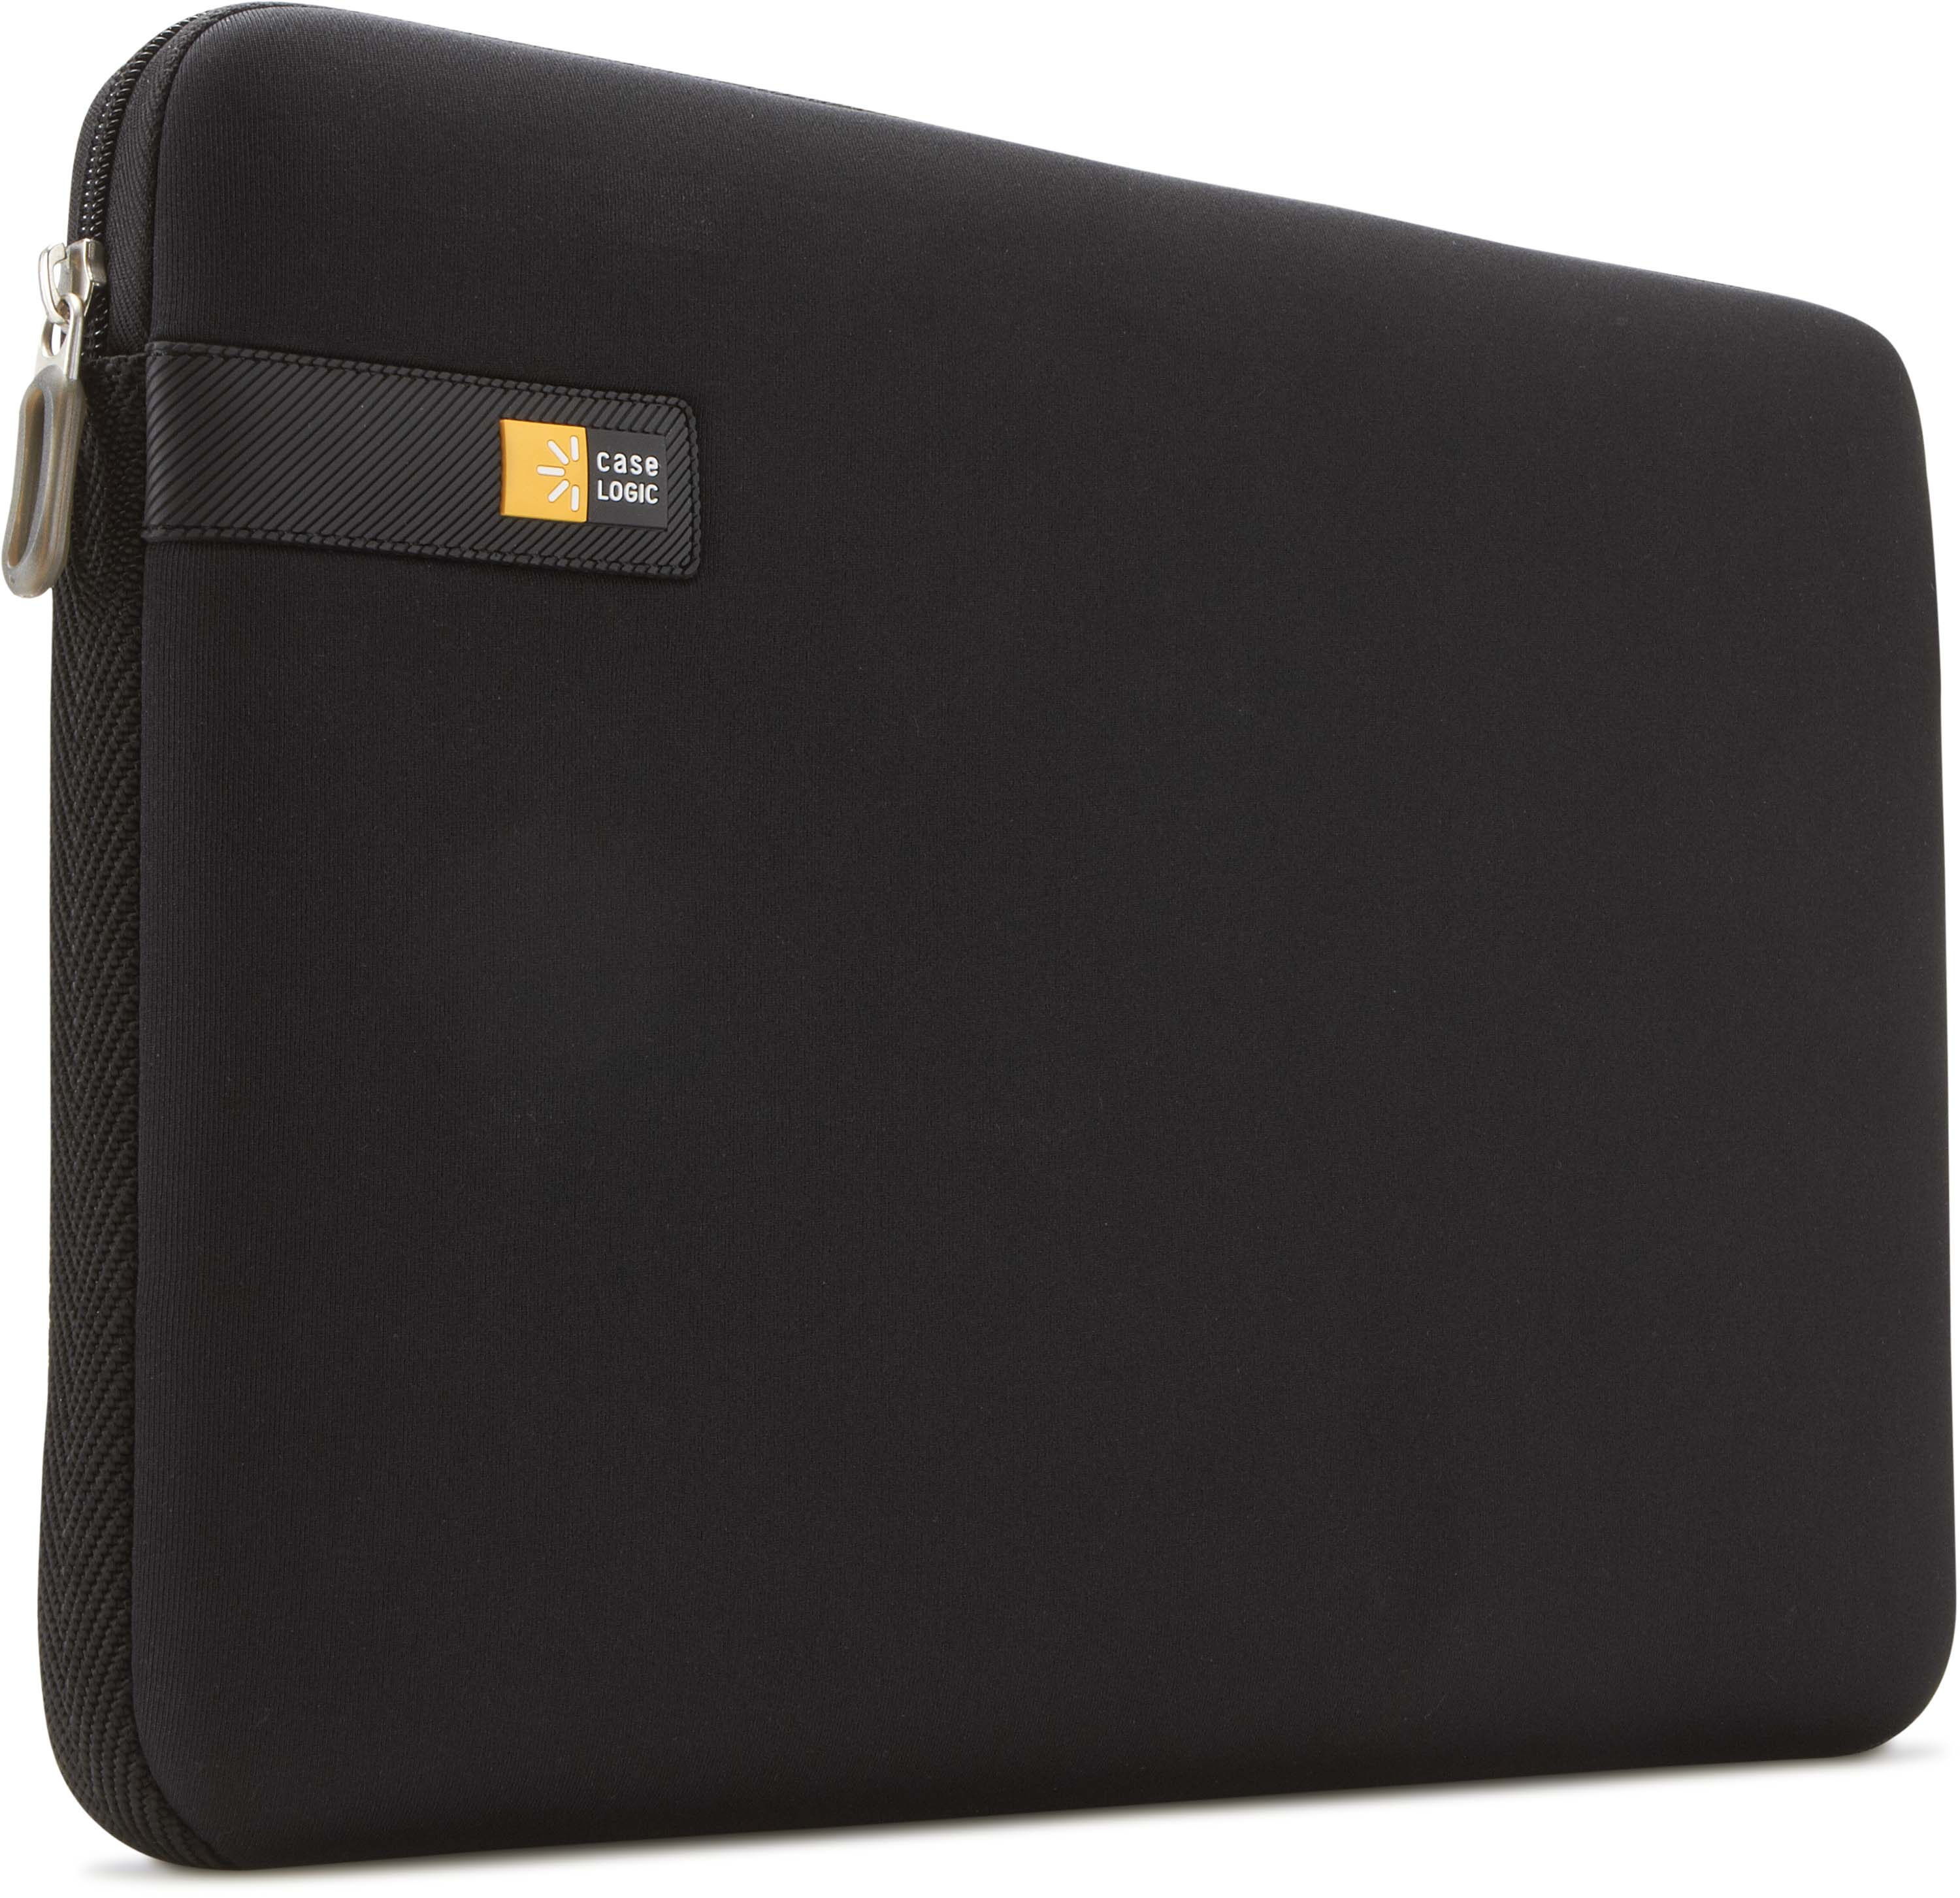 CASE Schwarz Universal Notebooksleeve Universal EVA-Schaum, LOGIC Sleeve für